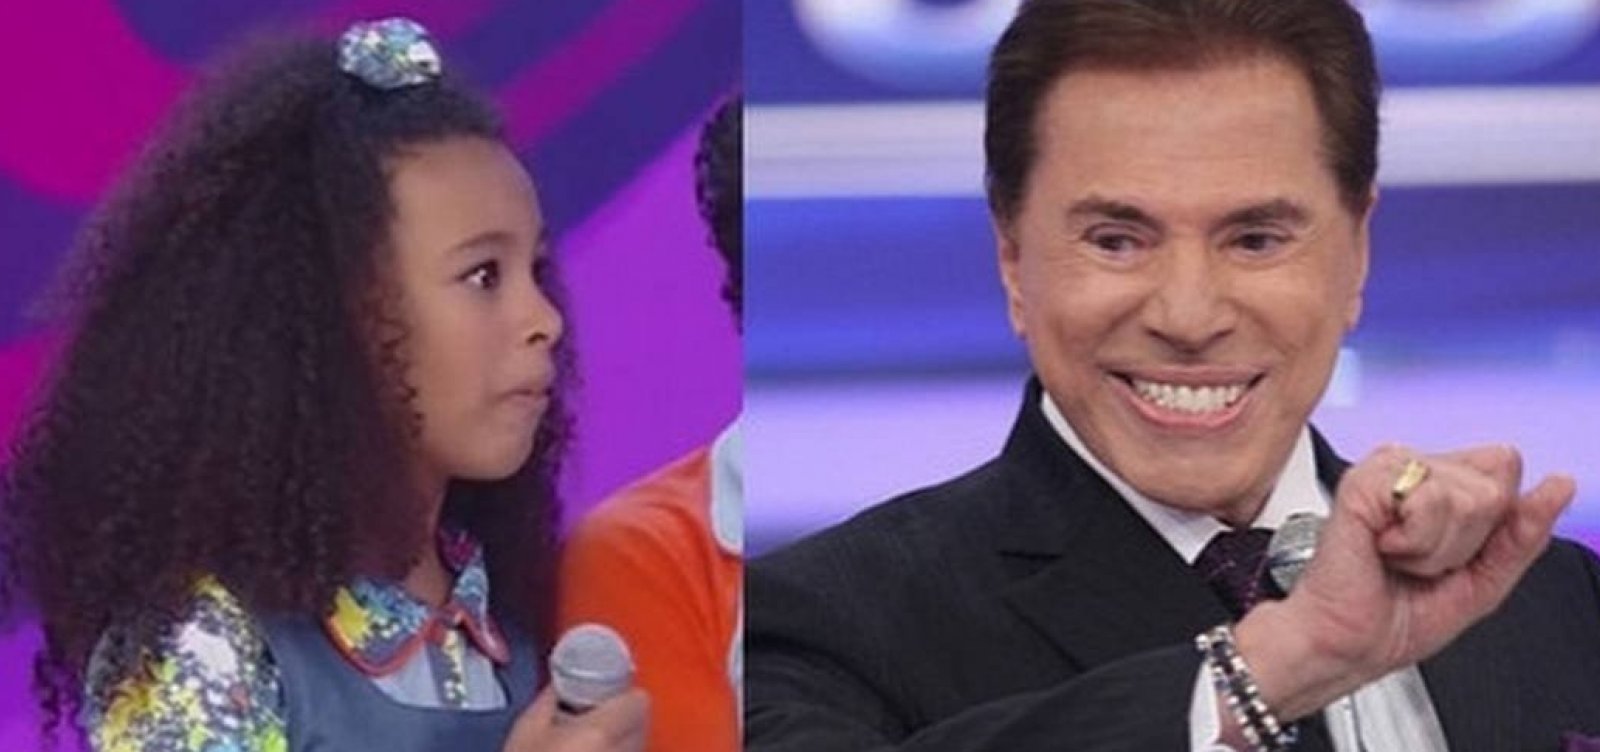 Ex-Chiquitita relembra comentário racista de Silvio Santos: 'Desnecessário'